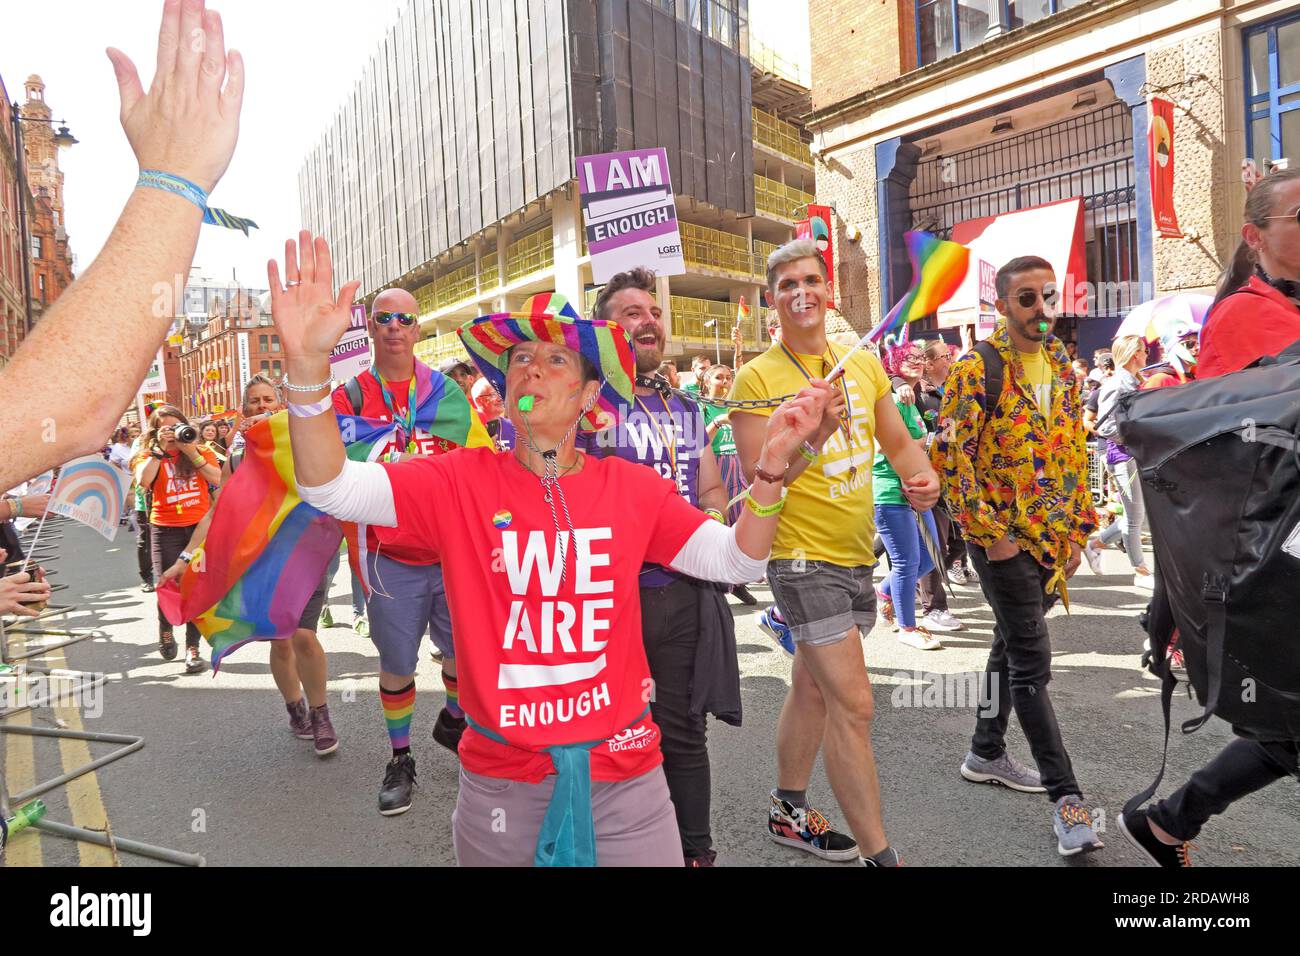 Wir sind genug, ich bin genug bei der Manchester Pride Festival Parade, 36 Whitworth Street, Manchester, England, UK, M1 3NR Stockfoto